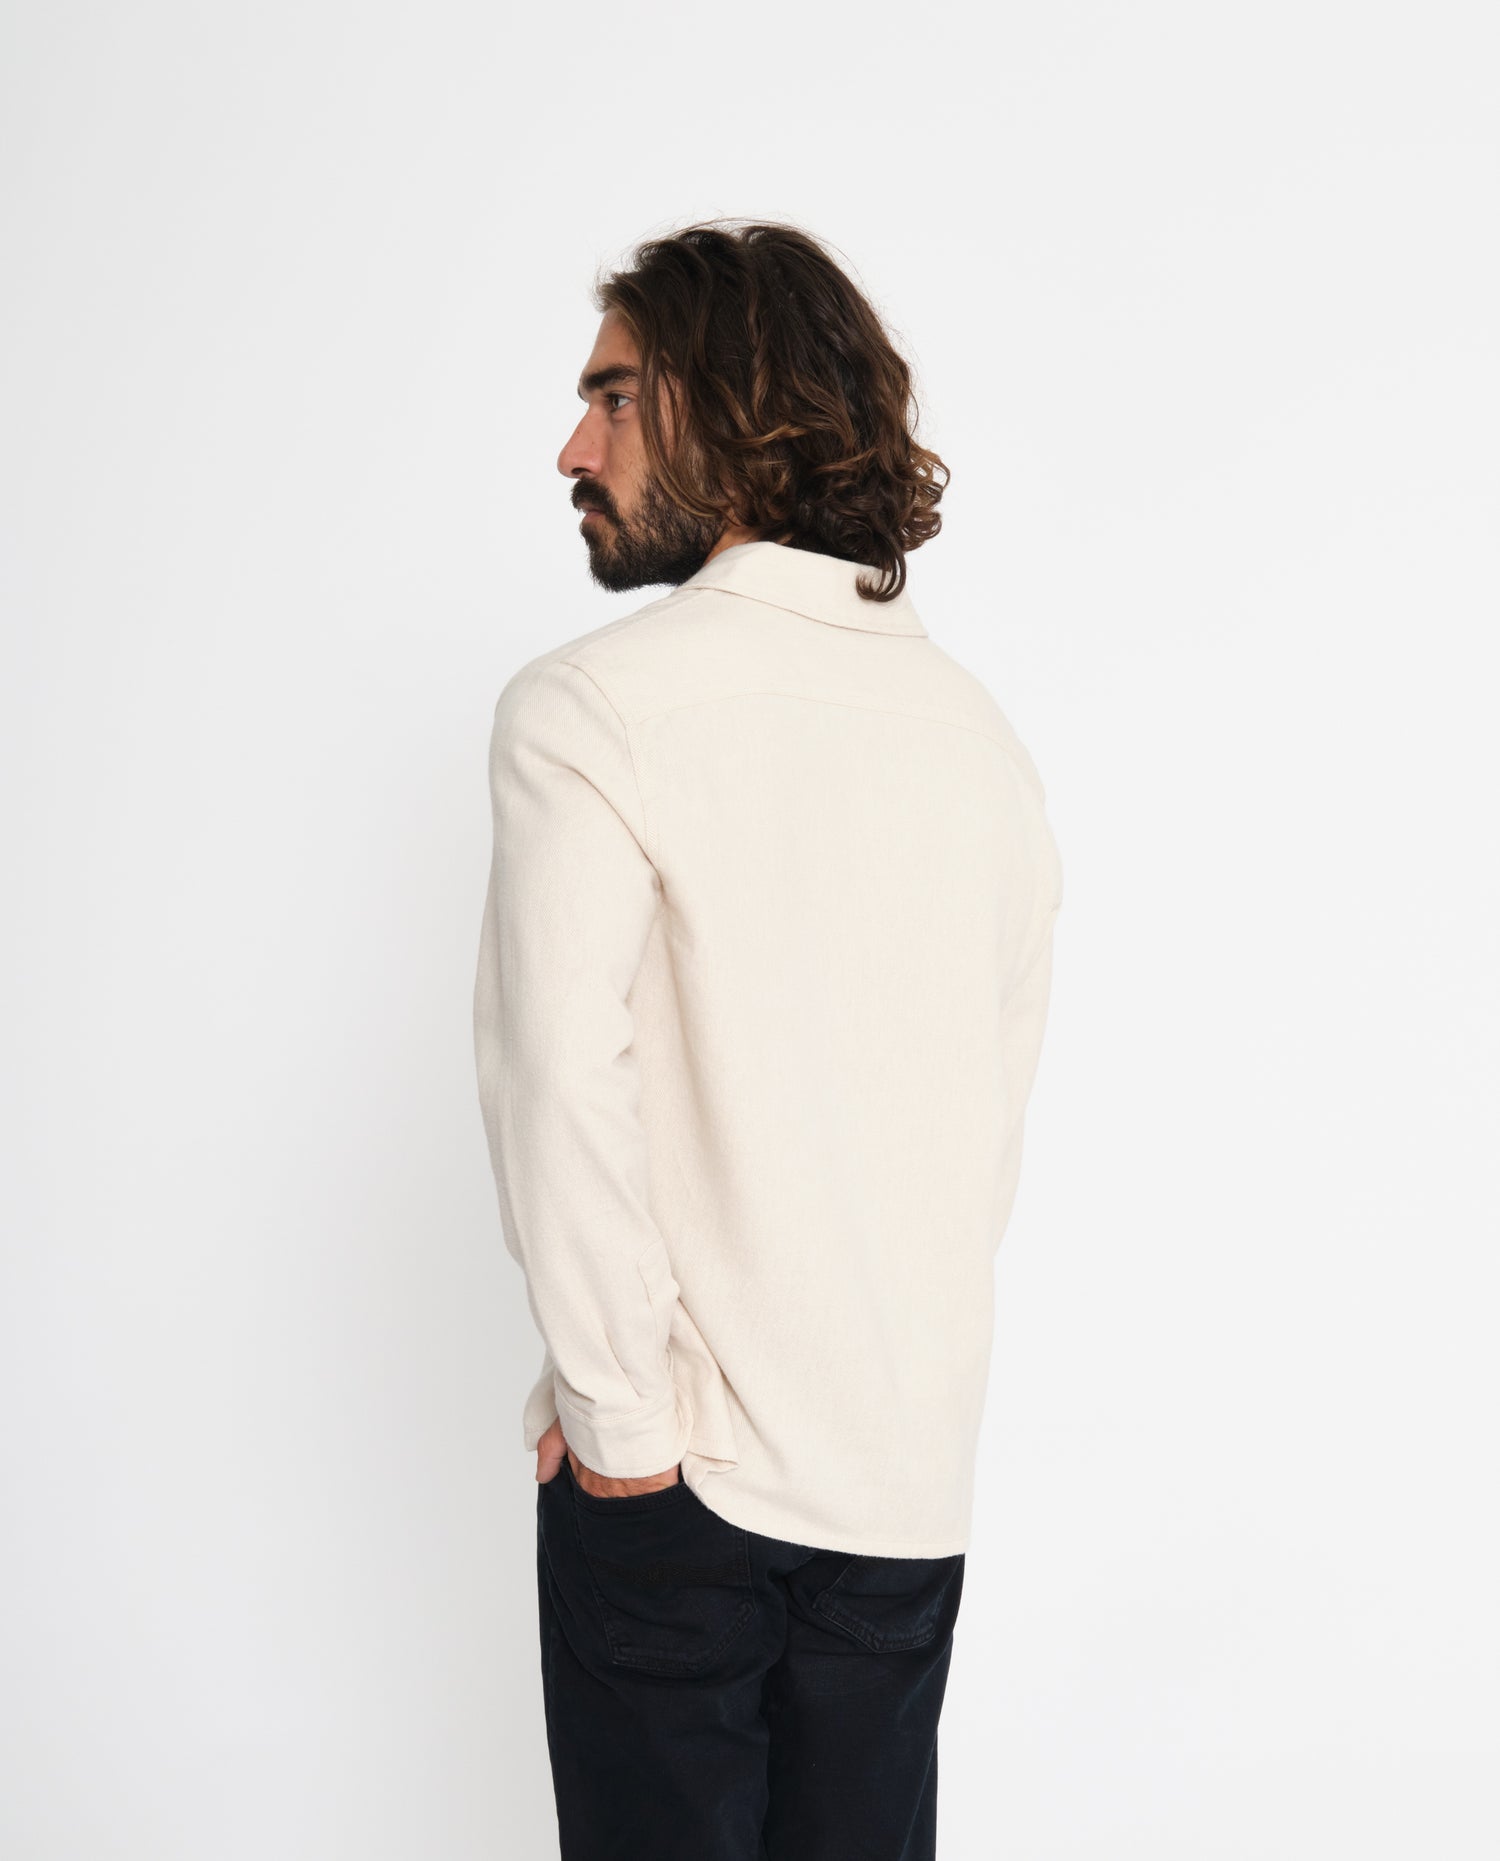 marché commun rotholz chemise flanelle homme coton biologique éco-responsable blanc crème